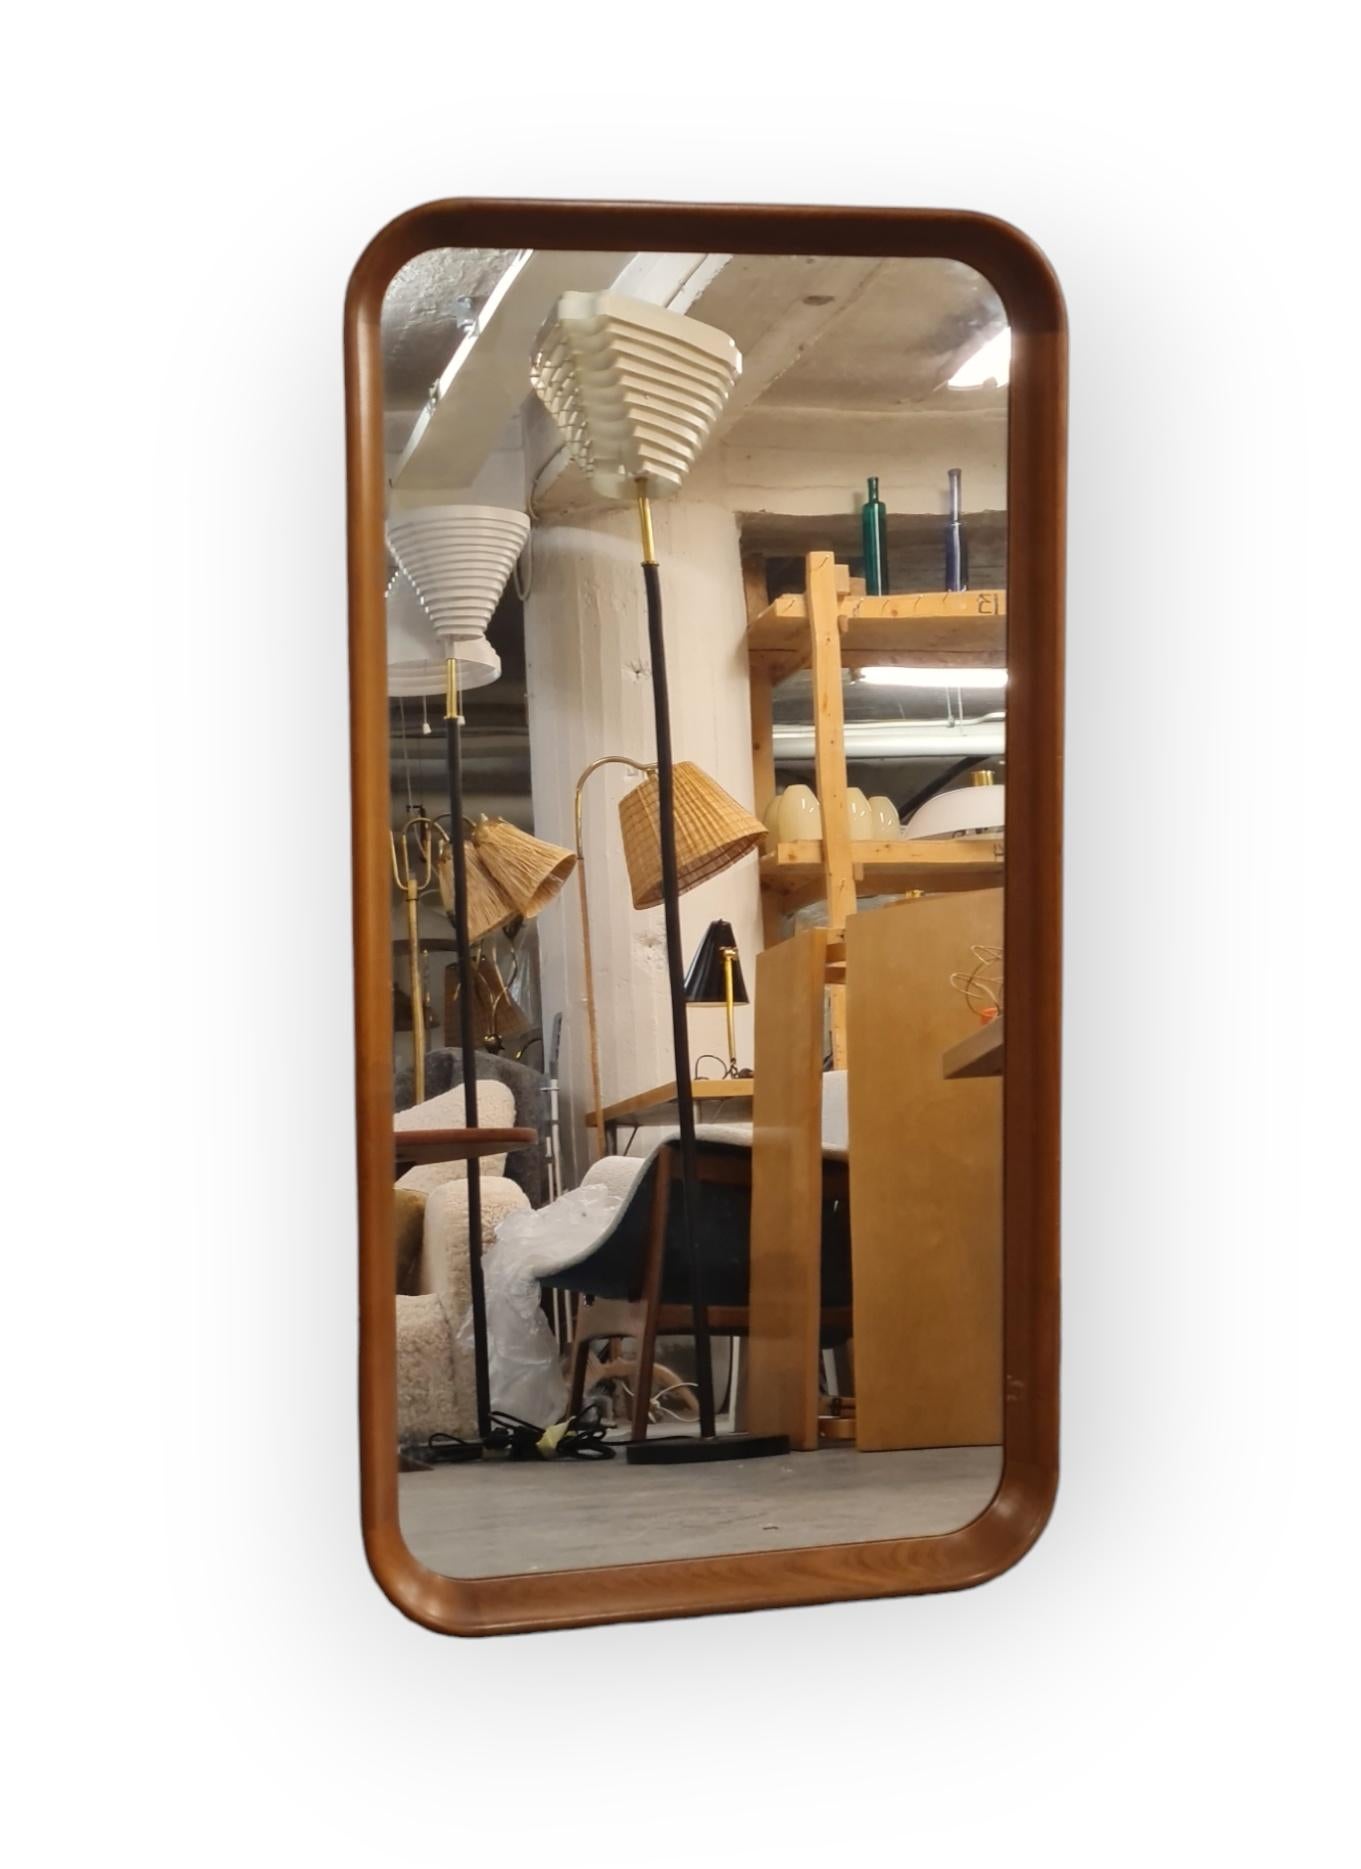 Un beau miroir moderne minimaliste dans un cadre en teck conçu par Olof Ottelin, qui était designer et directeur du grand magasin de design de meubles Stockmann. Le miroir a été réalisé par Keravan Puuseppätehdas. 
Pour les amateurs de minimalisme, 